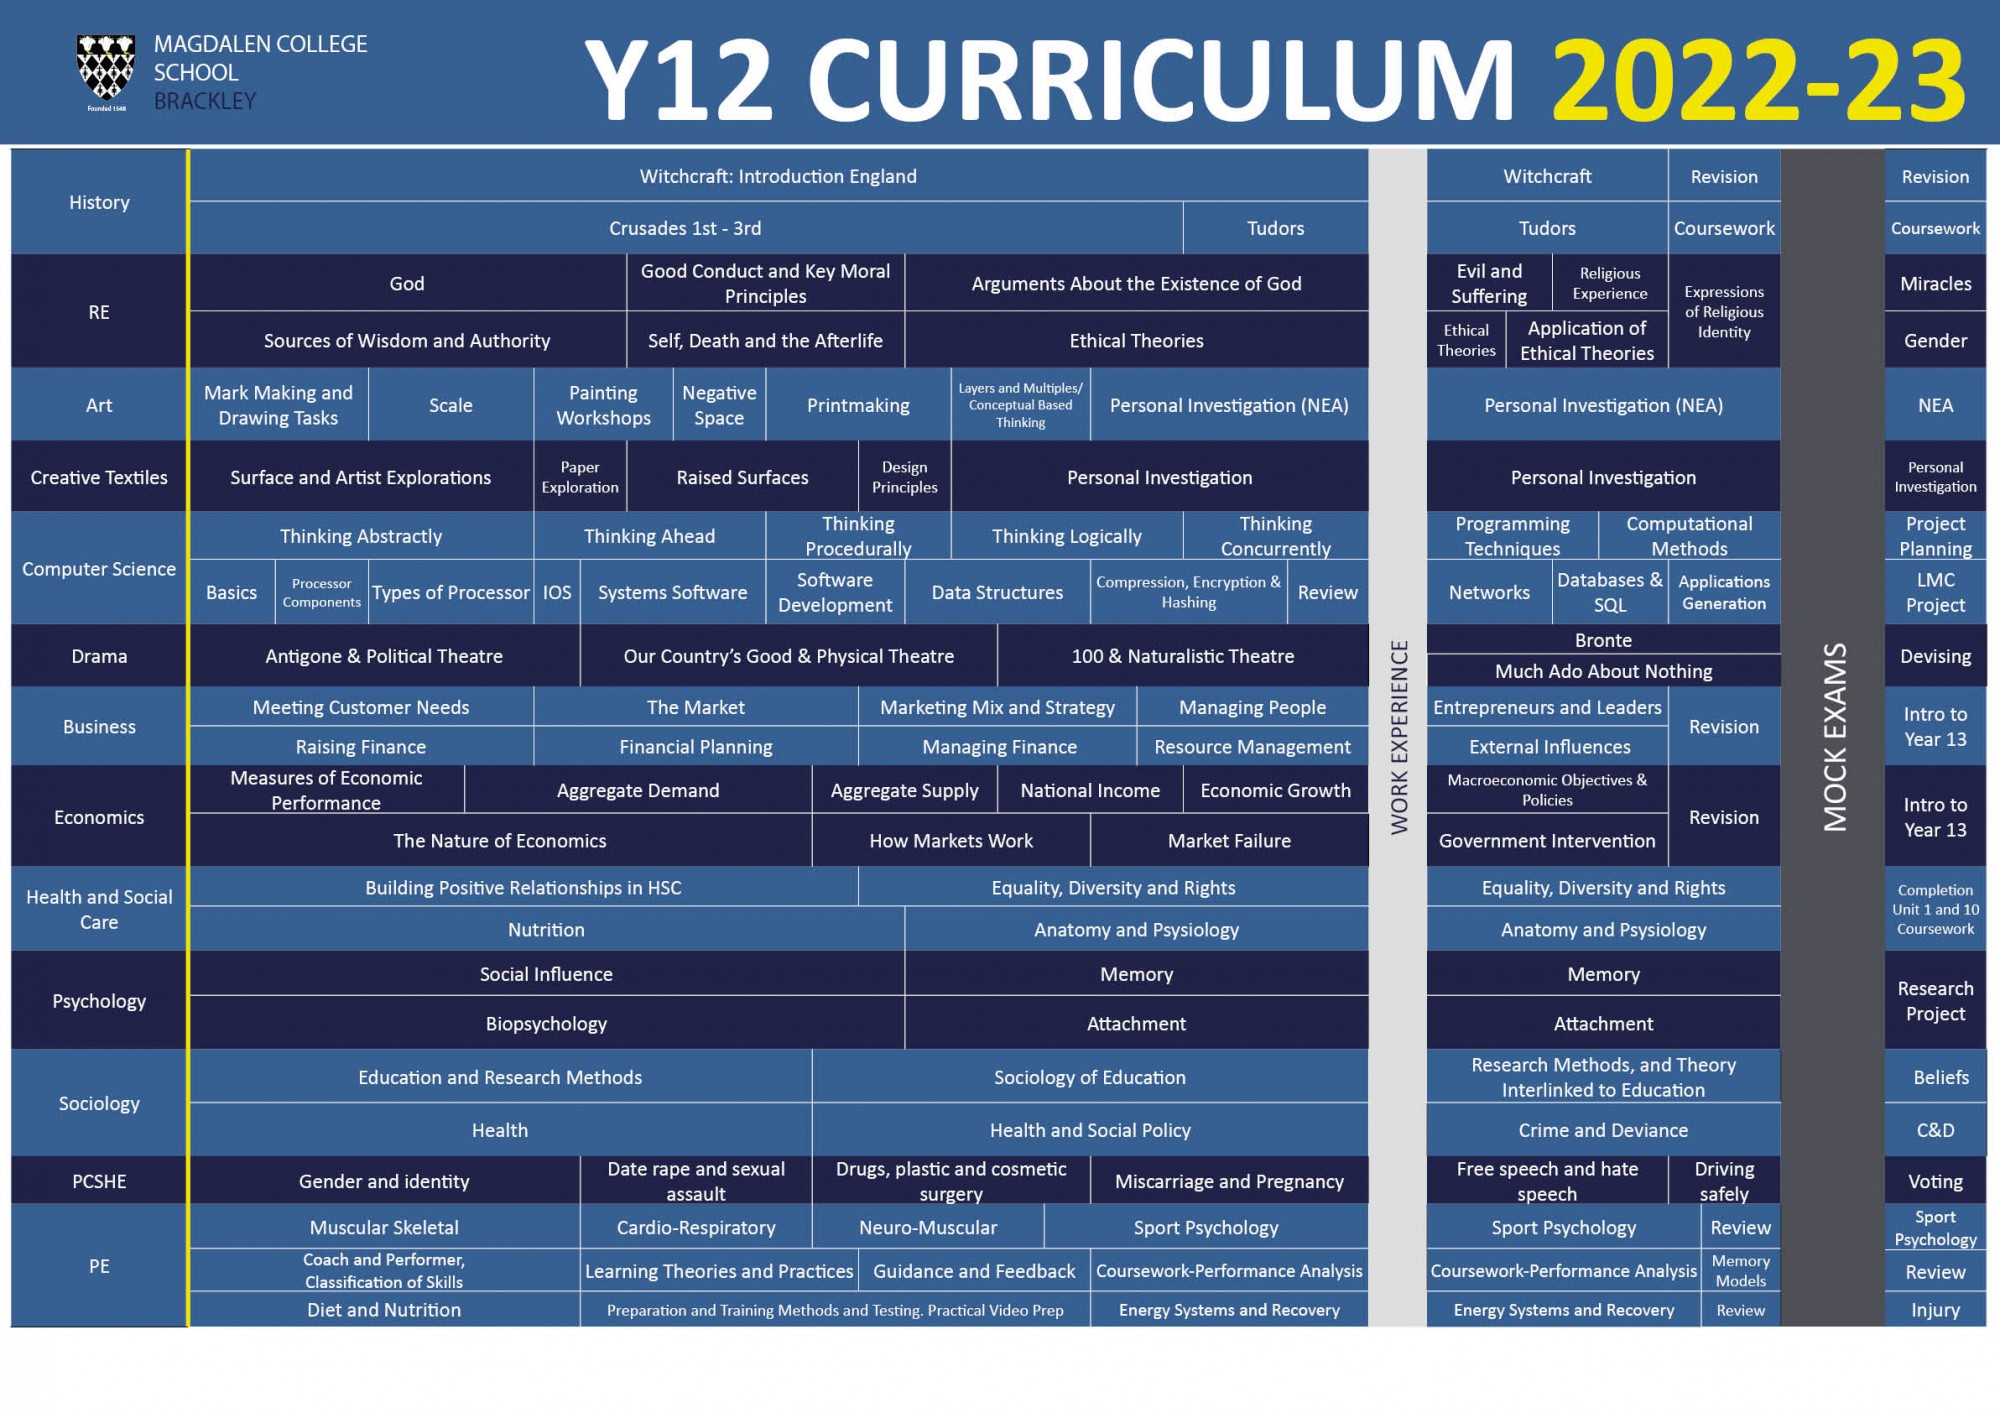 curriculum map Y12 2